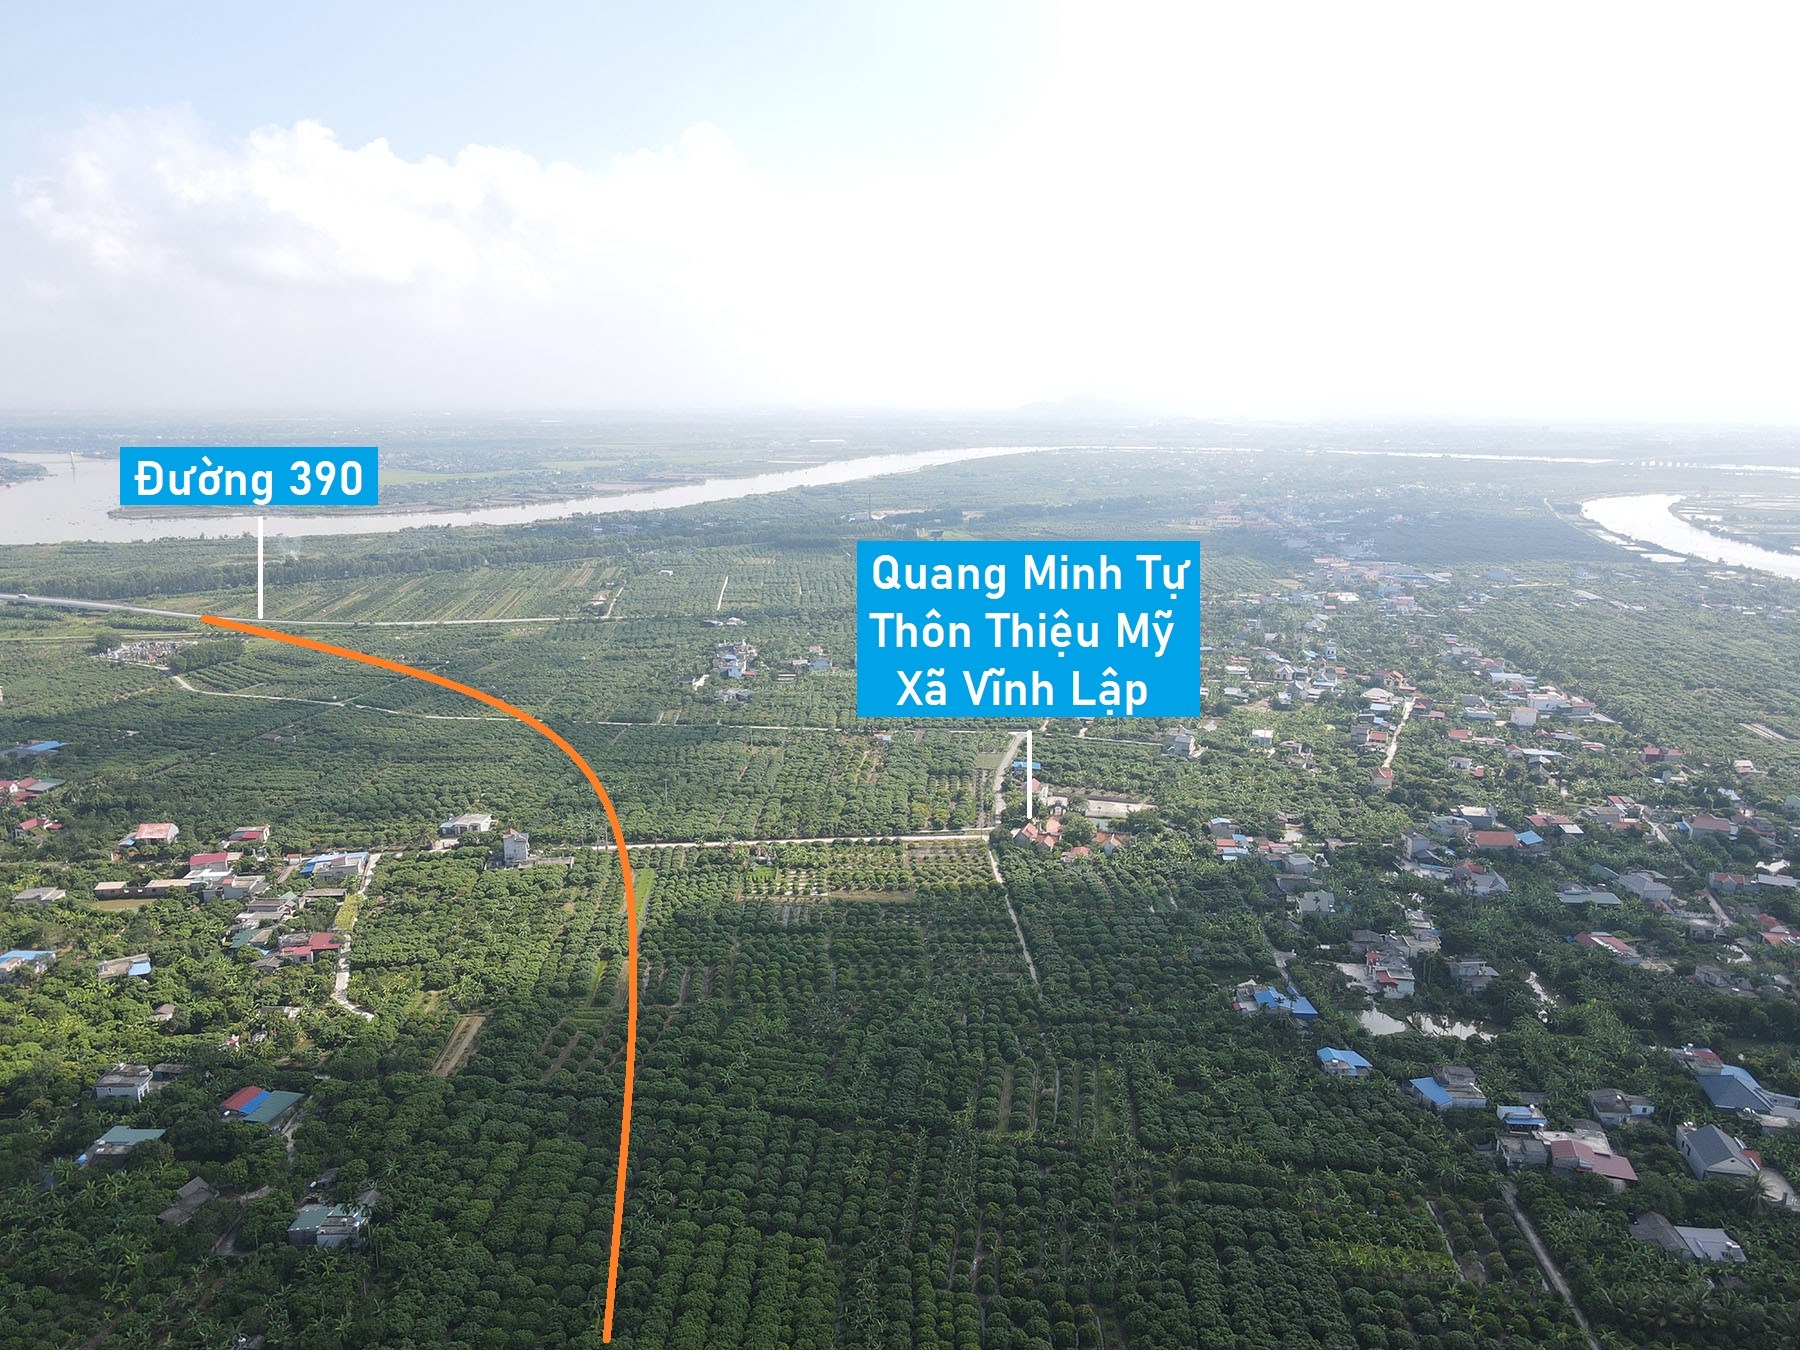 Toàn cảnh vị trí dự kiến quy hoạch xây cầu vượt sông Thái Bình nối huyện Thanh Hà - Tứ Kỳ, Hải Dương